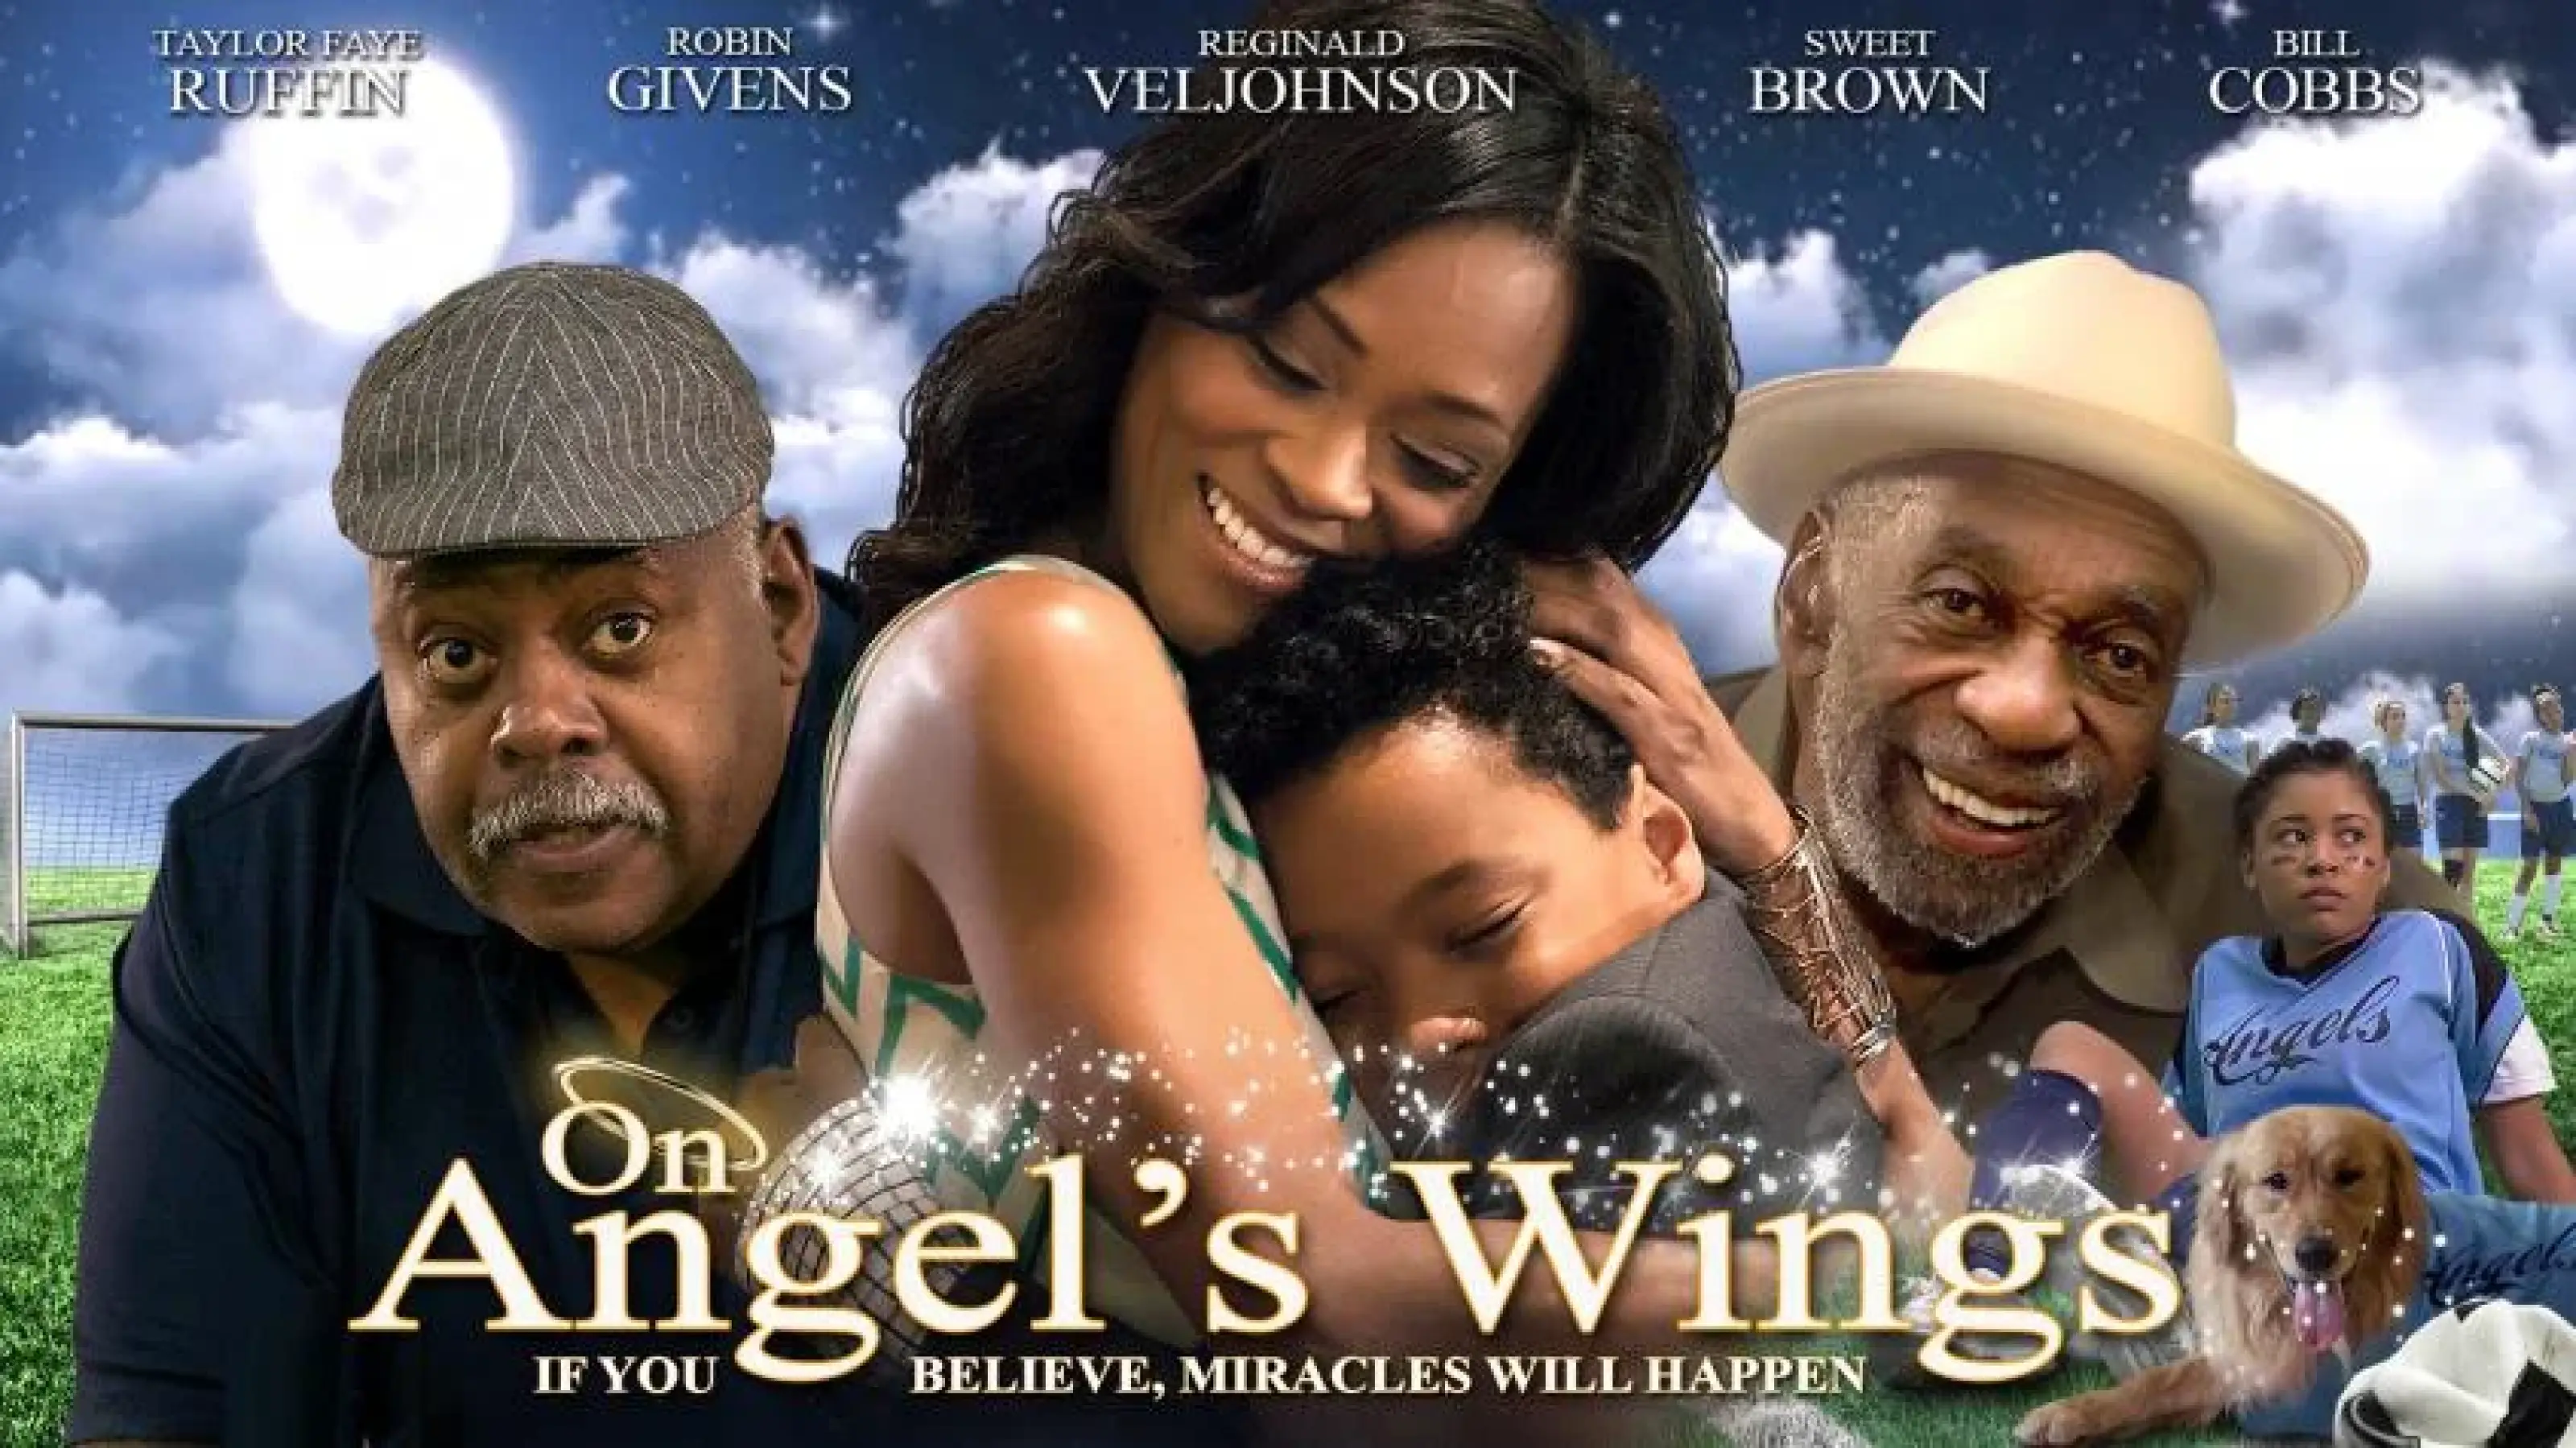 On Angel's Wings